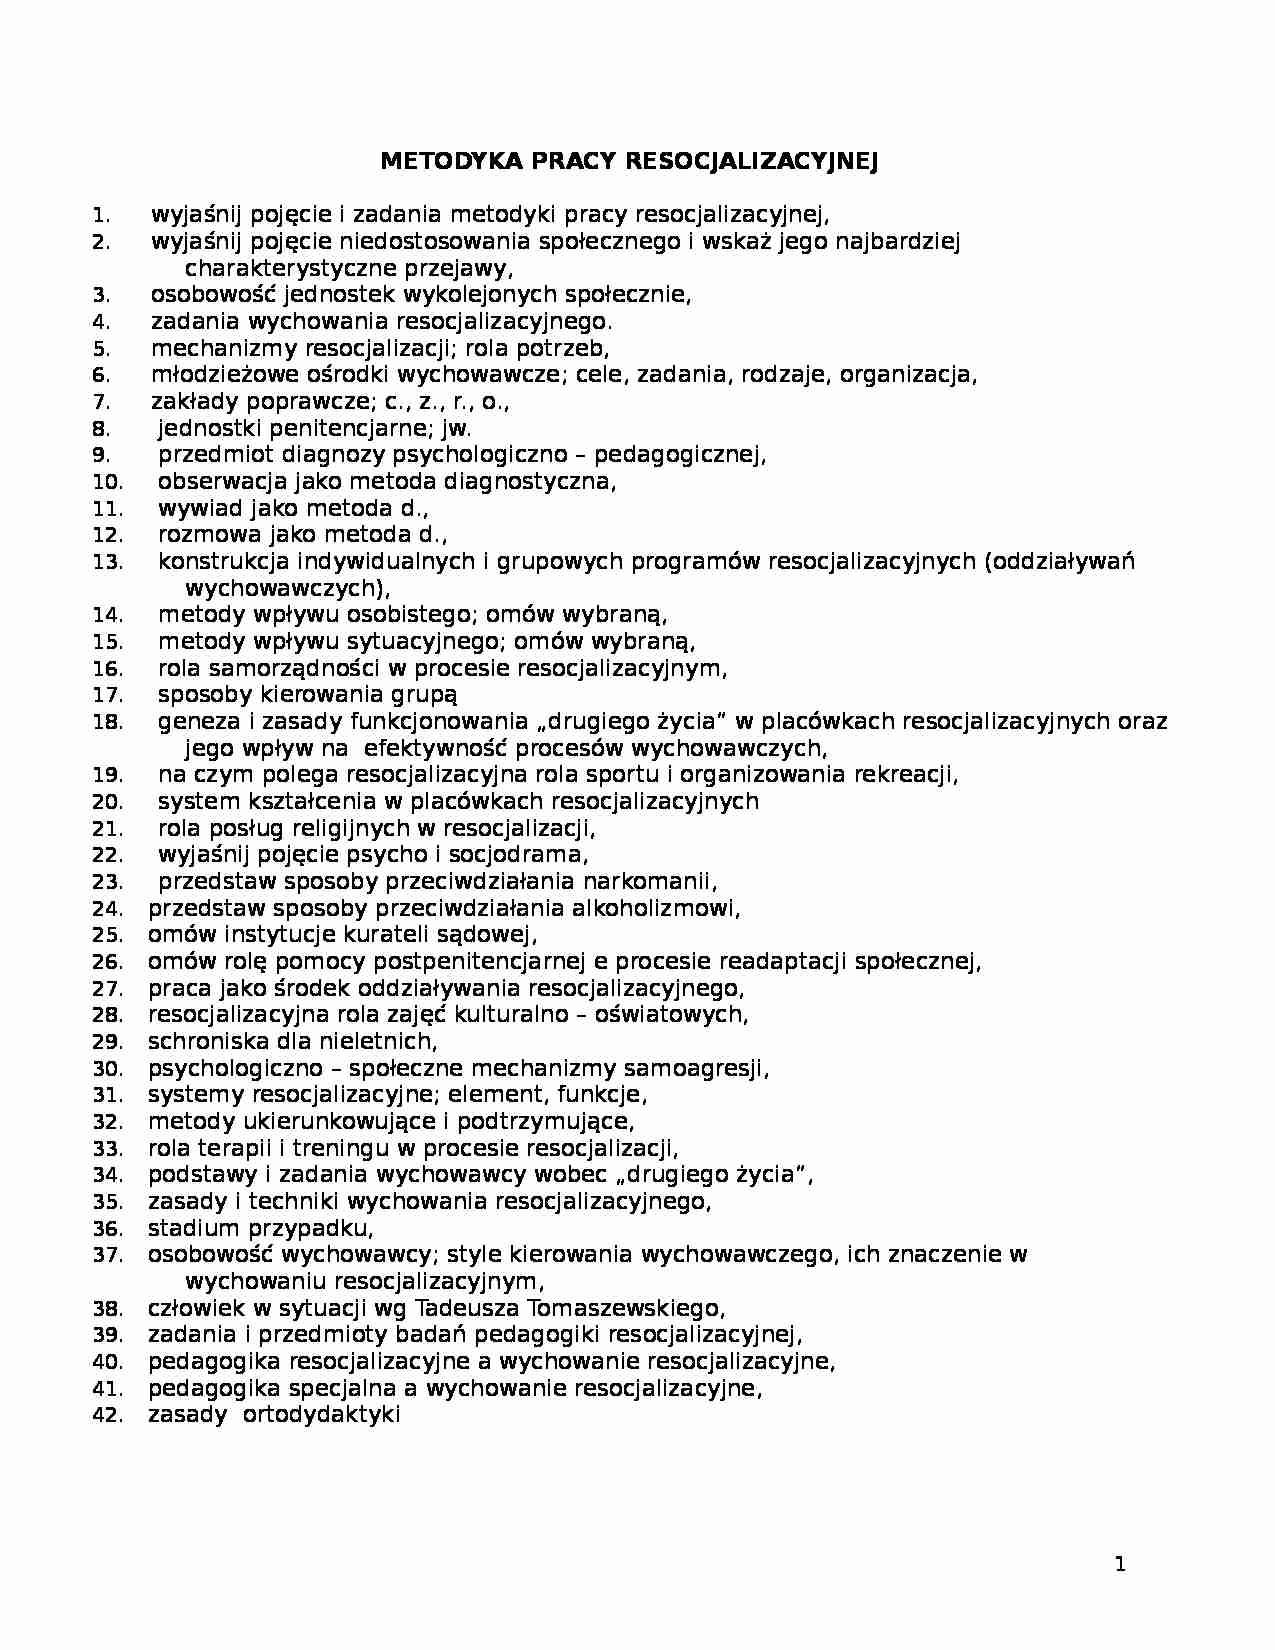 metodyka pracy resocjalizacyjnej - pedagogika - strona 1